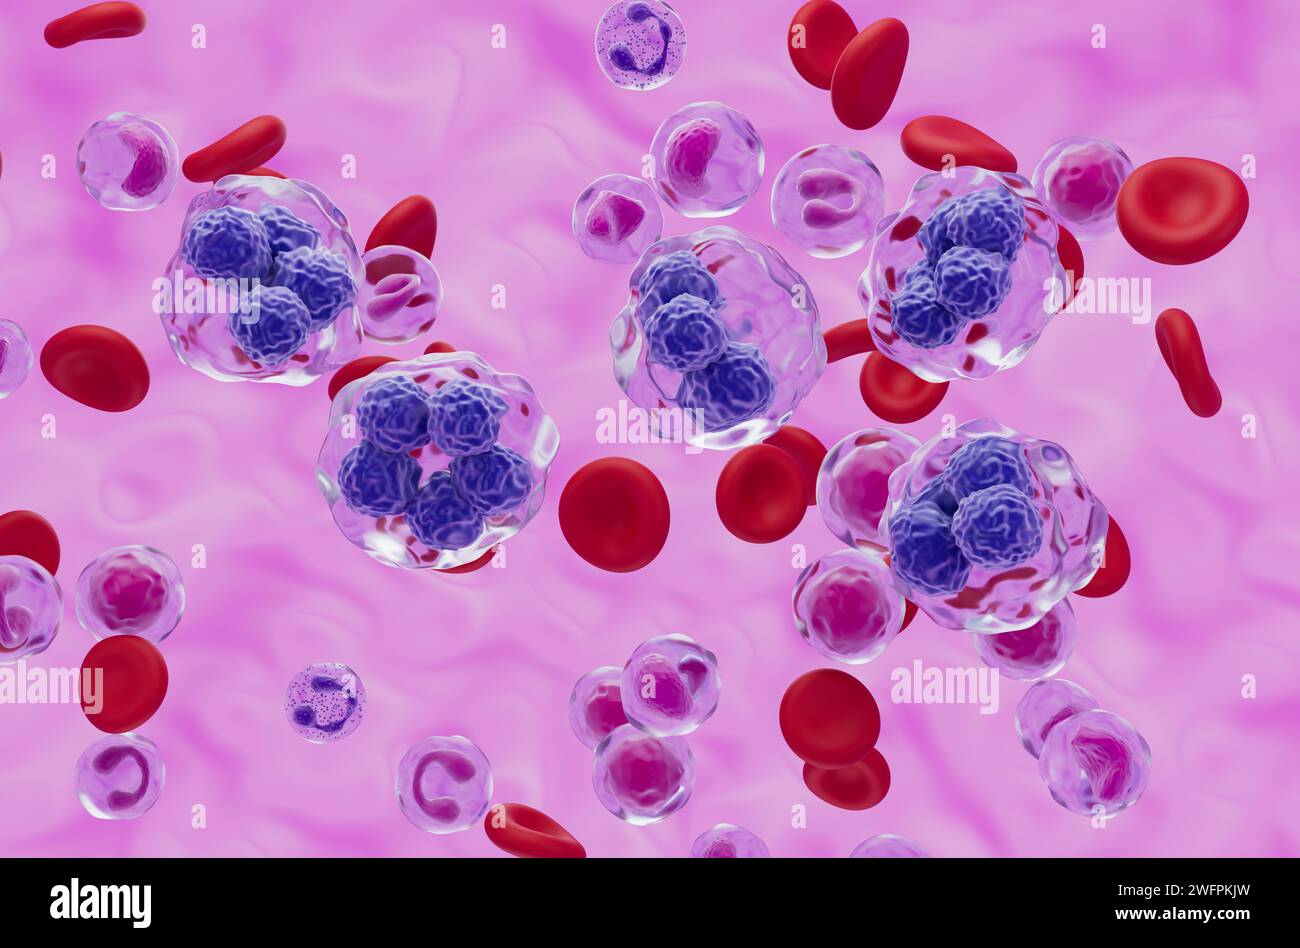 Cellules de lymphome T dans le flux sanguin - vue isométrique illustration 3D. Banque D'Images